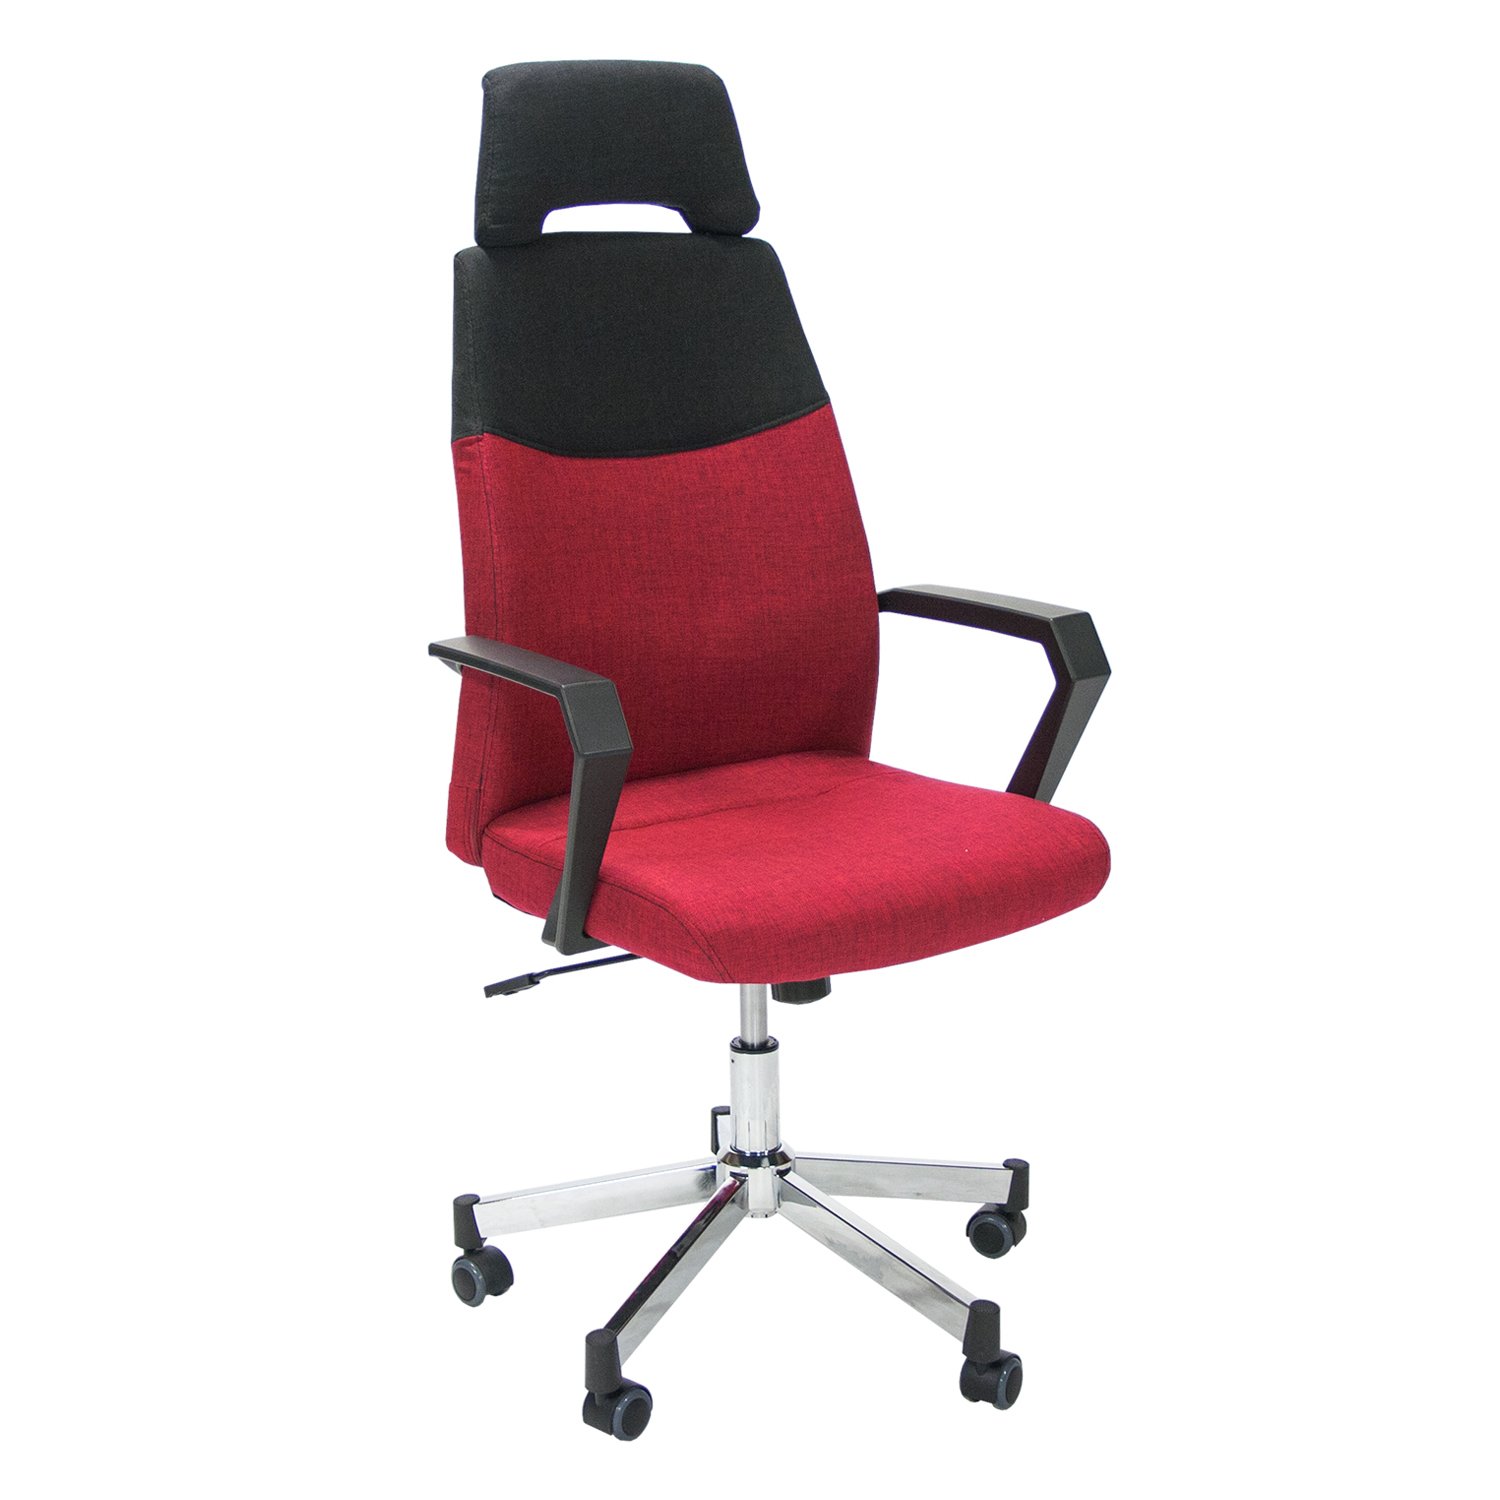 Biuro kėdė DOMINIC, 58x59x113,5-121 cm, raudona/ juoda, - 1